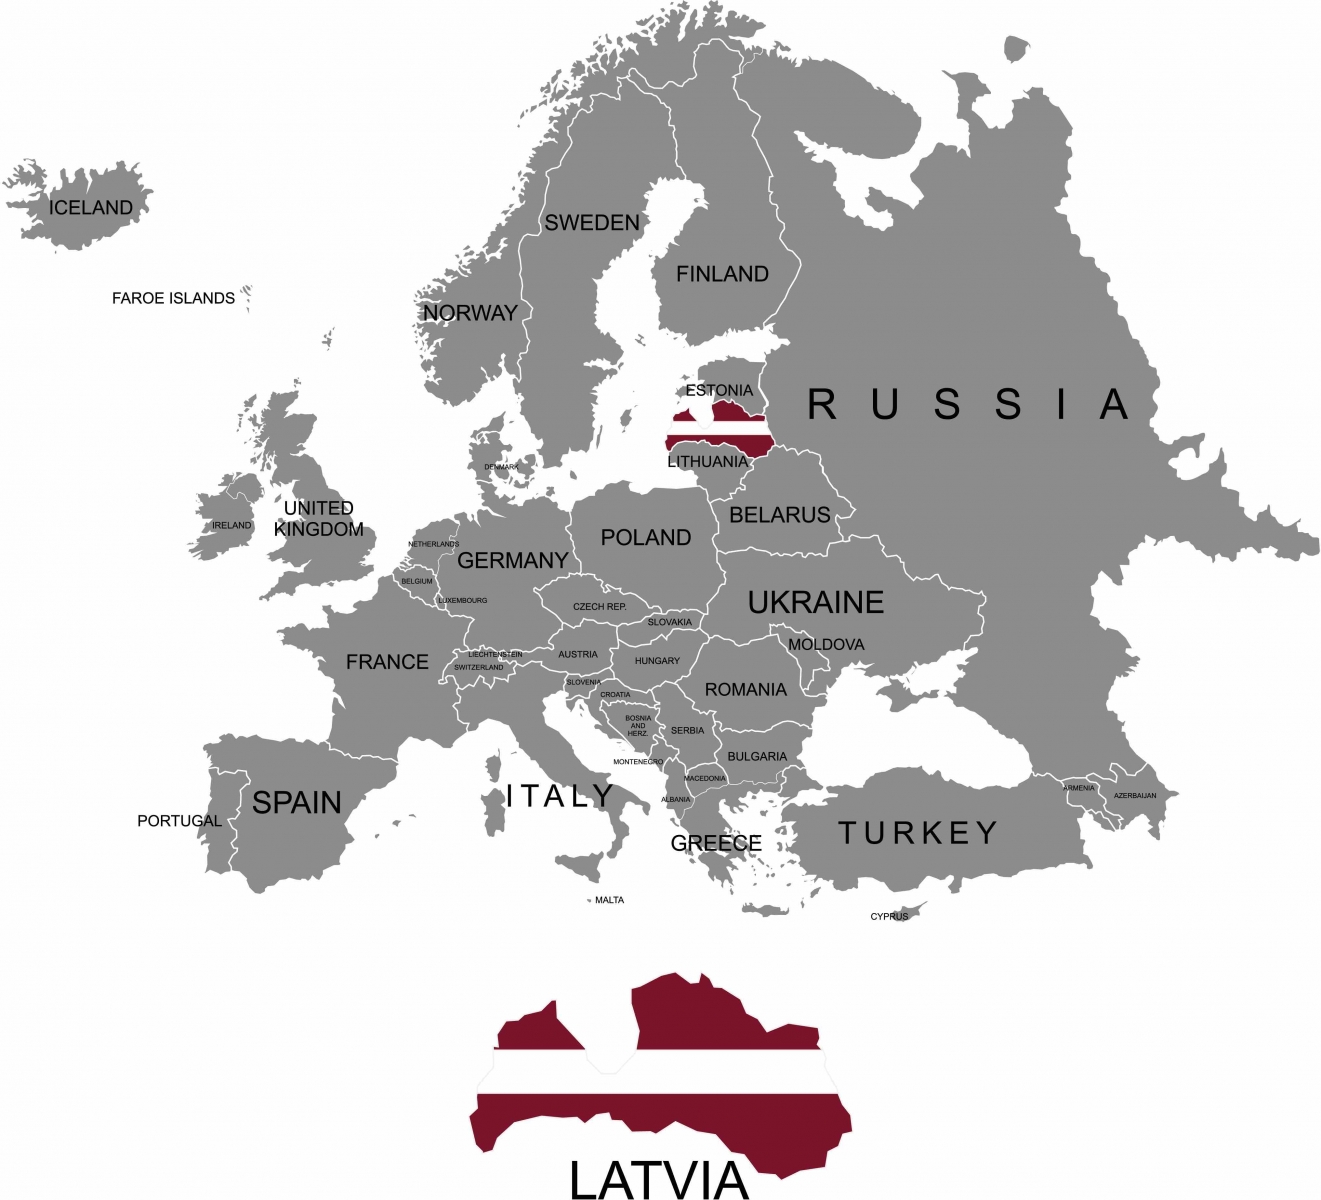 Territorium des europäischen Kontinents.  Lettland